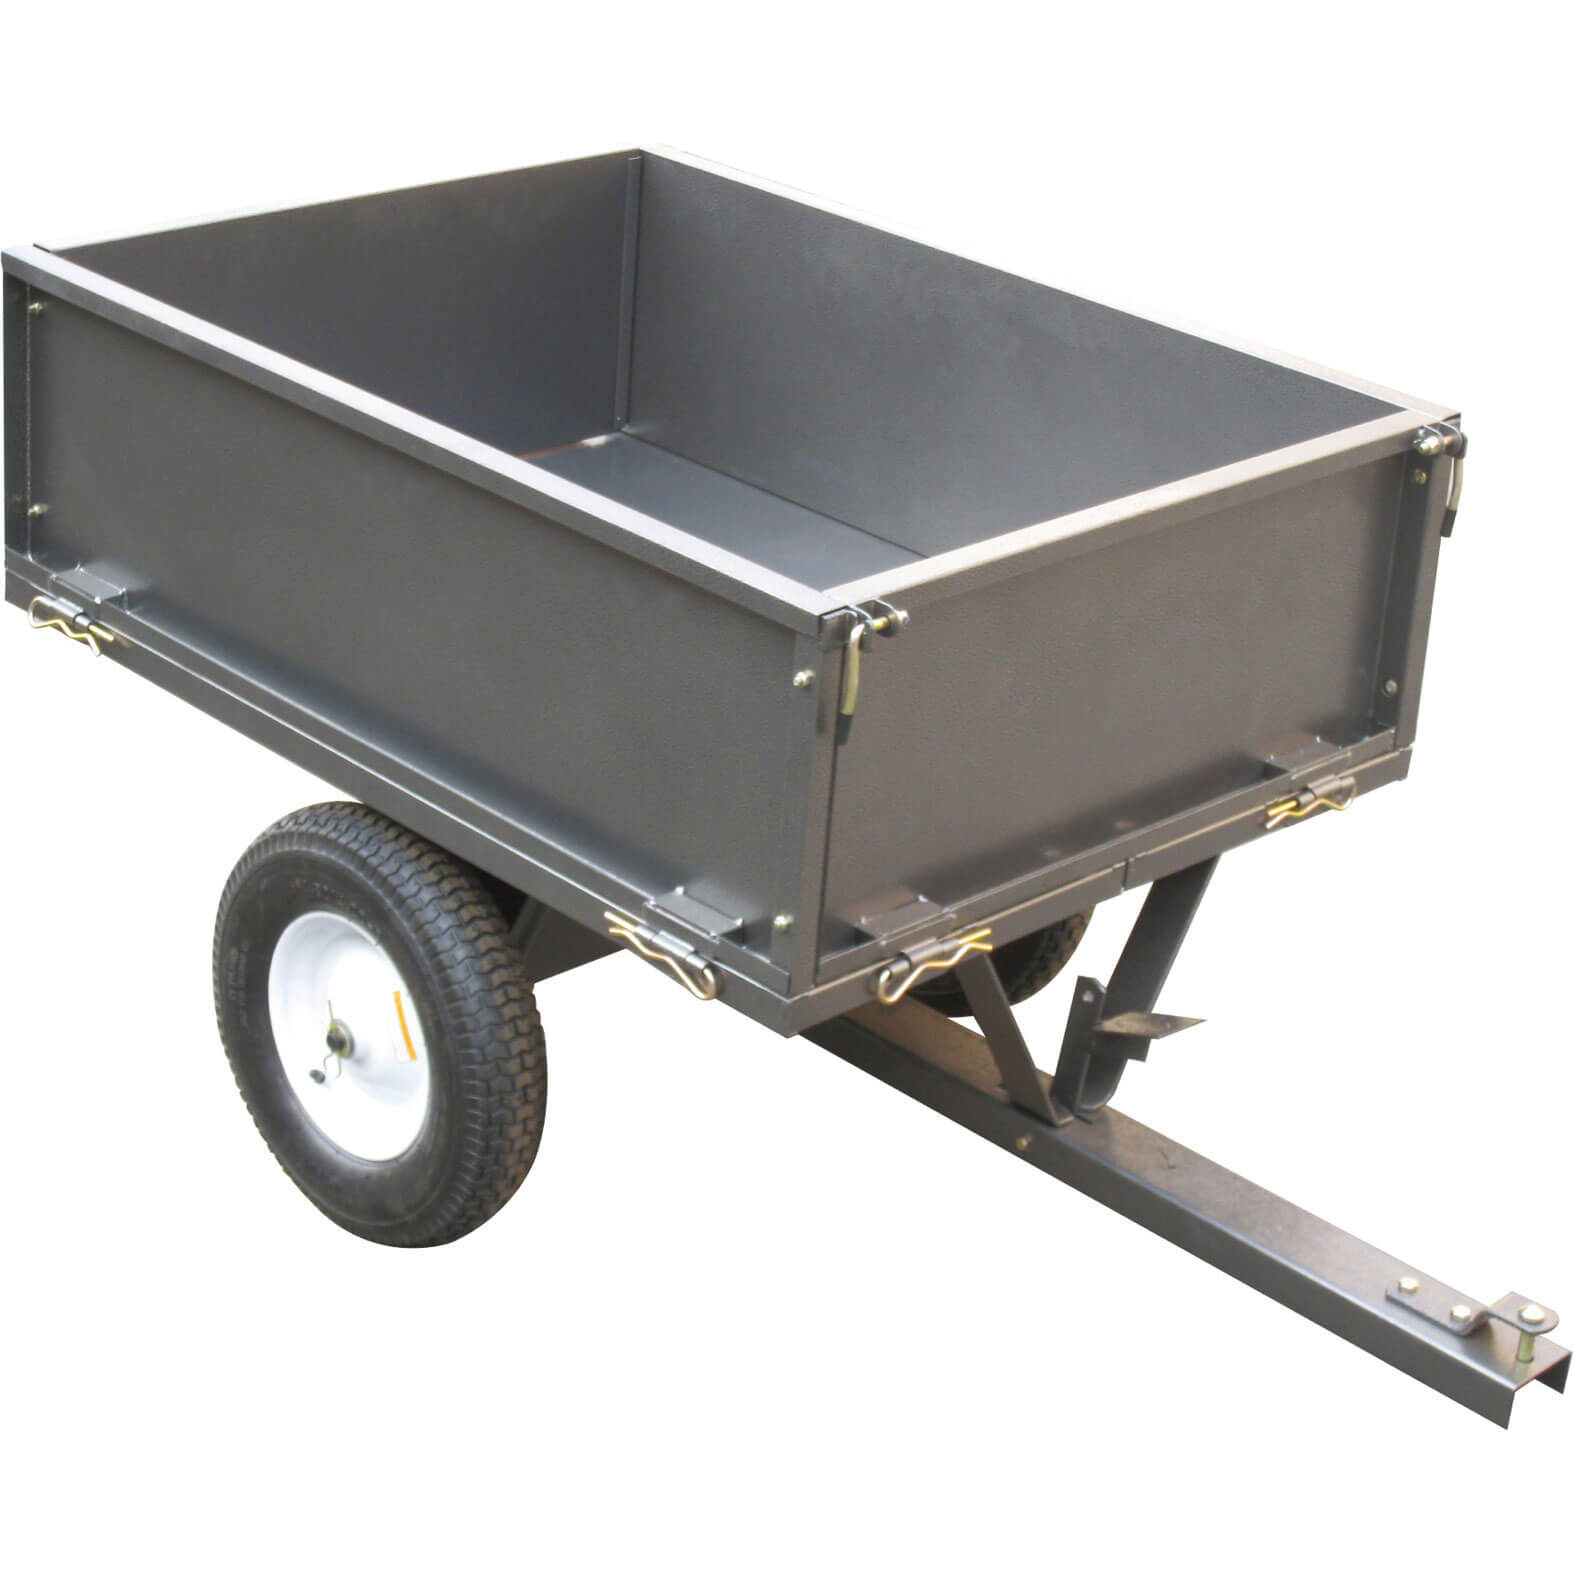 Image of Handy THGT500 Steel Garden Towable Dump Cart 227kg